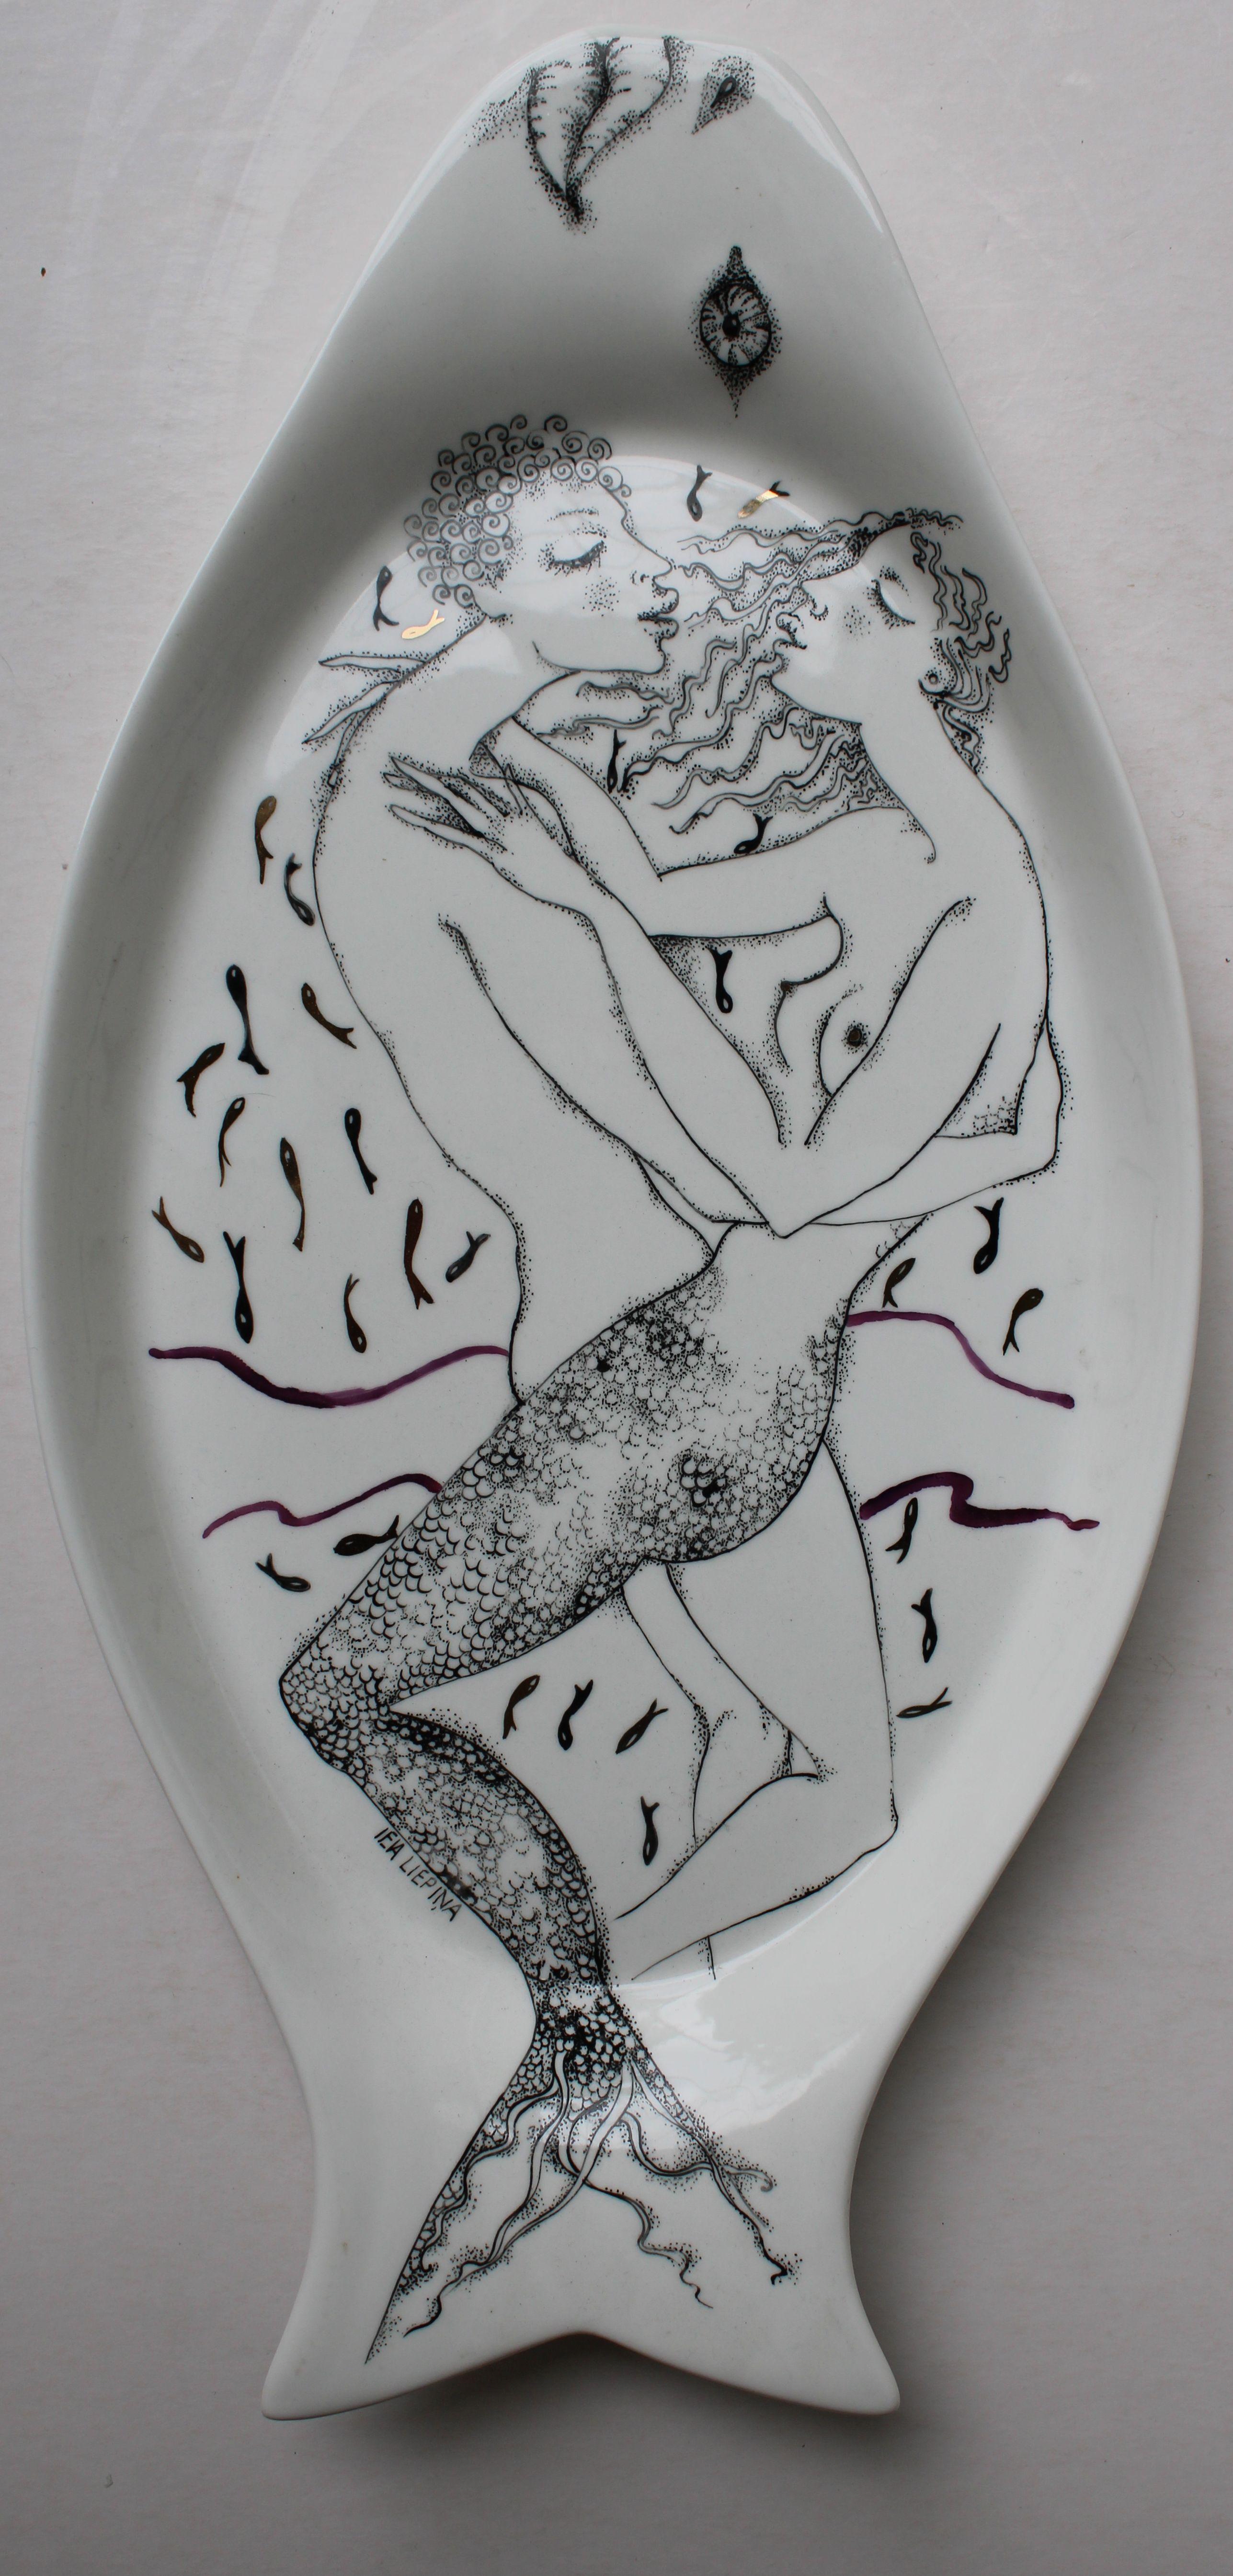  L'eau  2009, assiette en porcelaine peinte, 39х19х2,5 cm - Art de Ieva Liepina